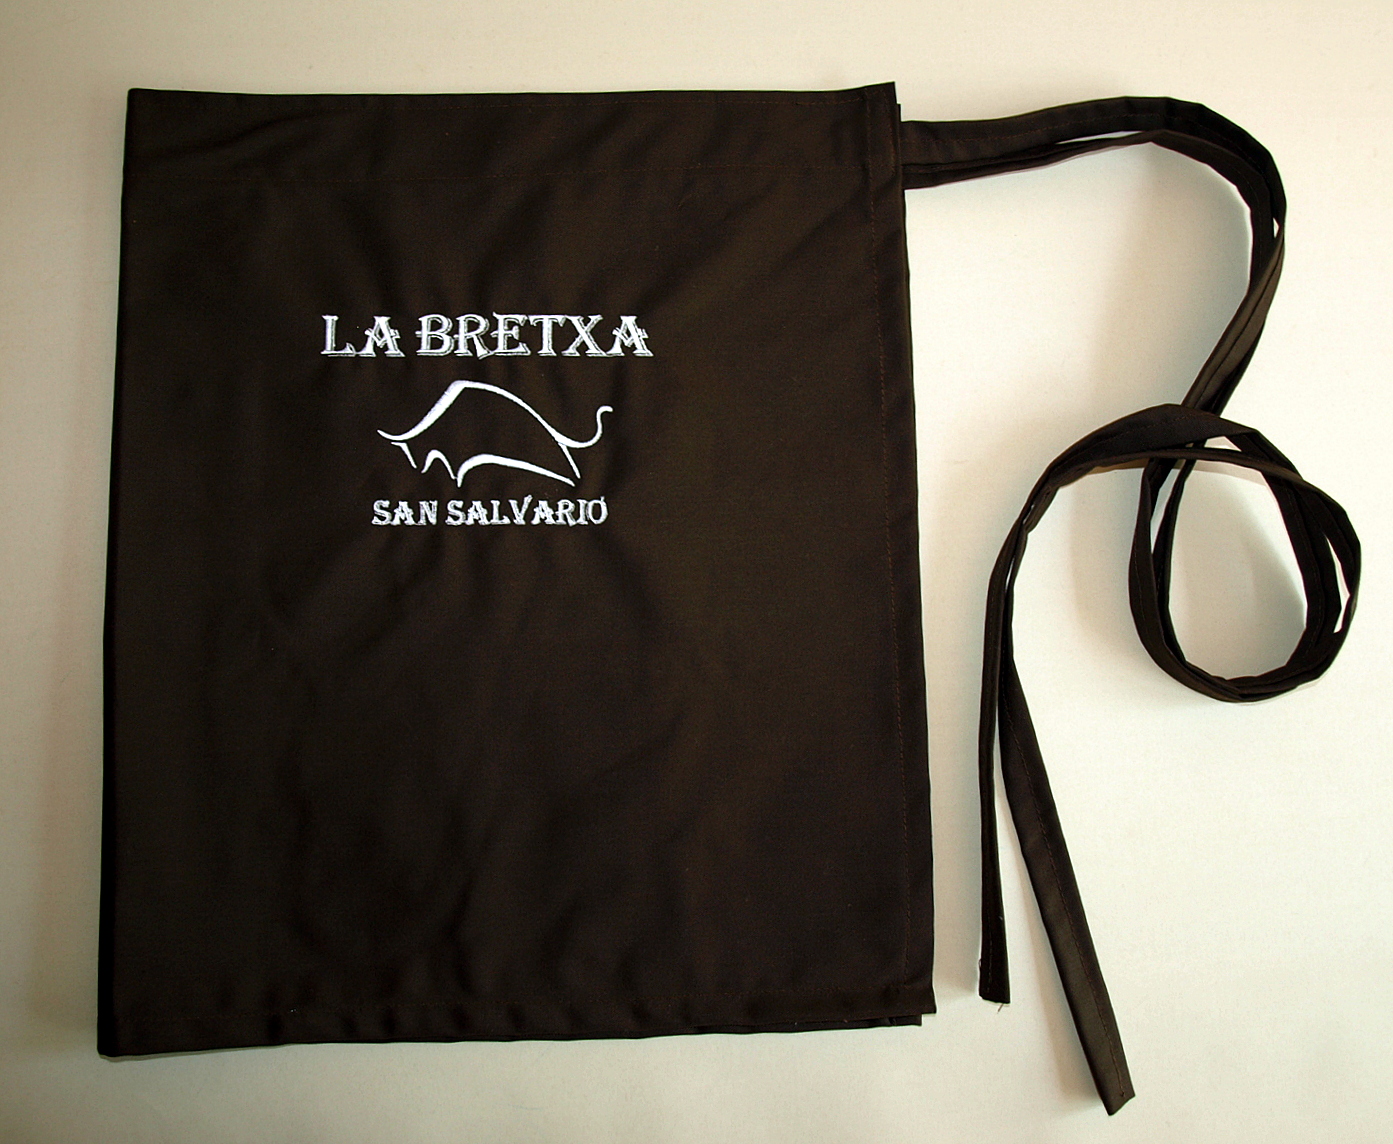 Zapaska kelnerska z haftem - La Bretxa San Salvario